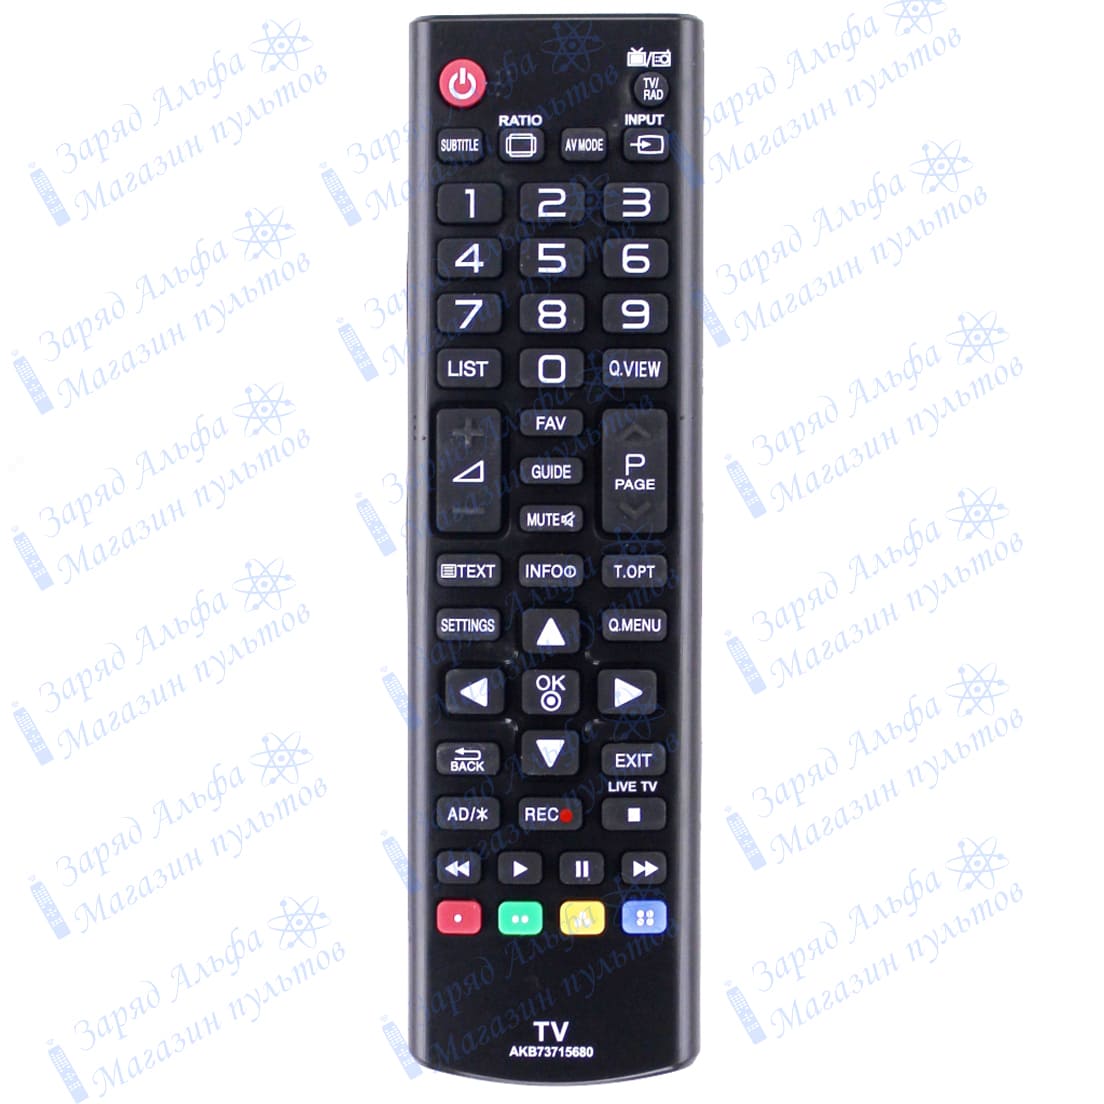 Пульт к LG AKB73715680 для телевизора LG 43LF5100, 49LF5100, 49LF5500, 55LF5500